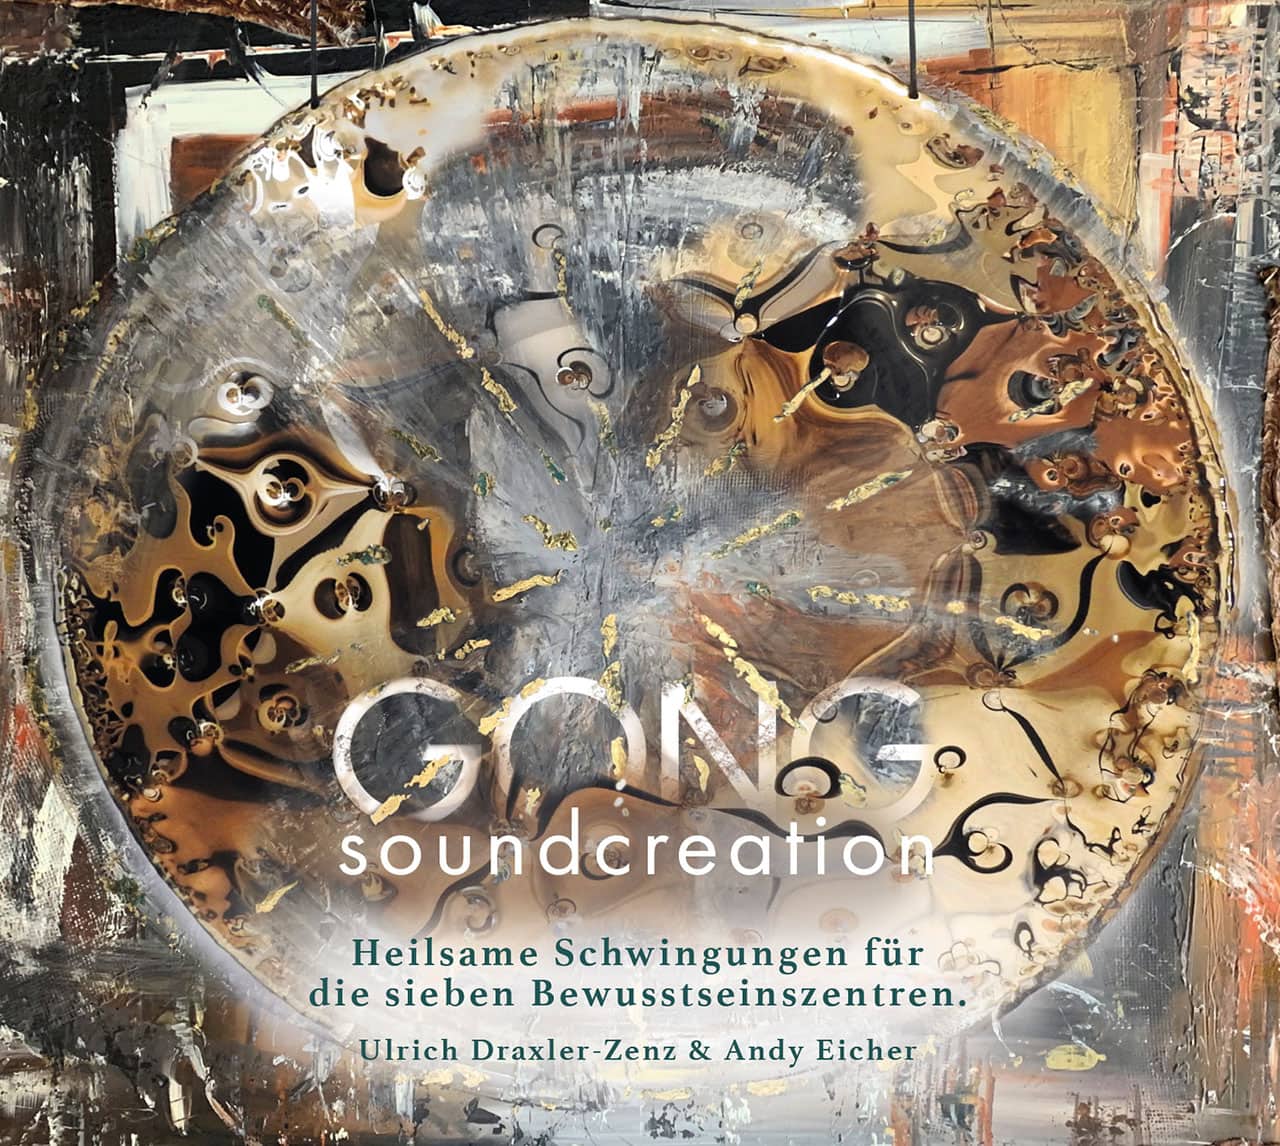 Gong soundcreation Ulrich Draxler-Zenz Andy Eicher